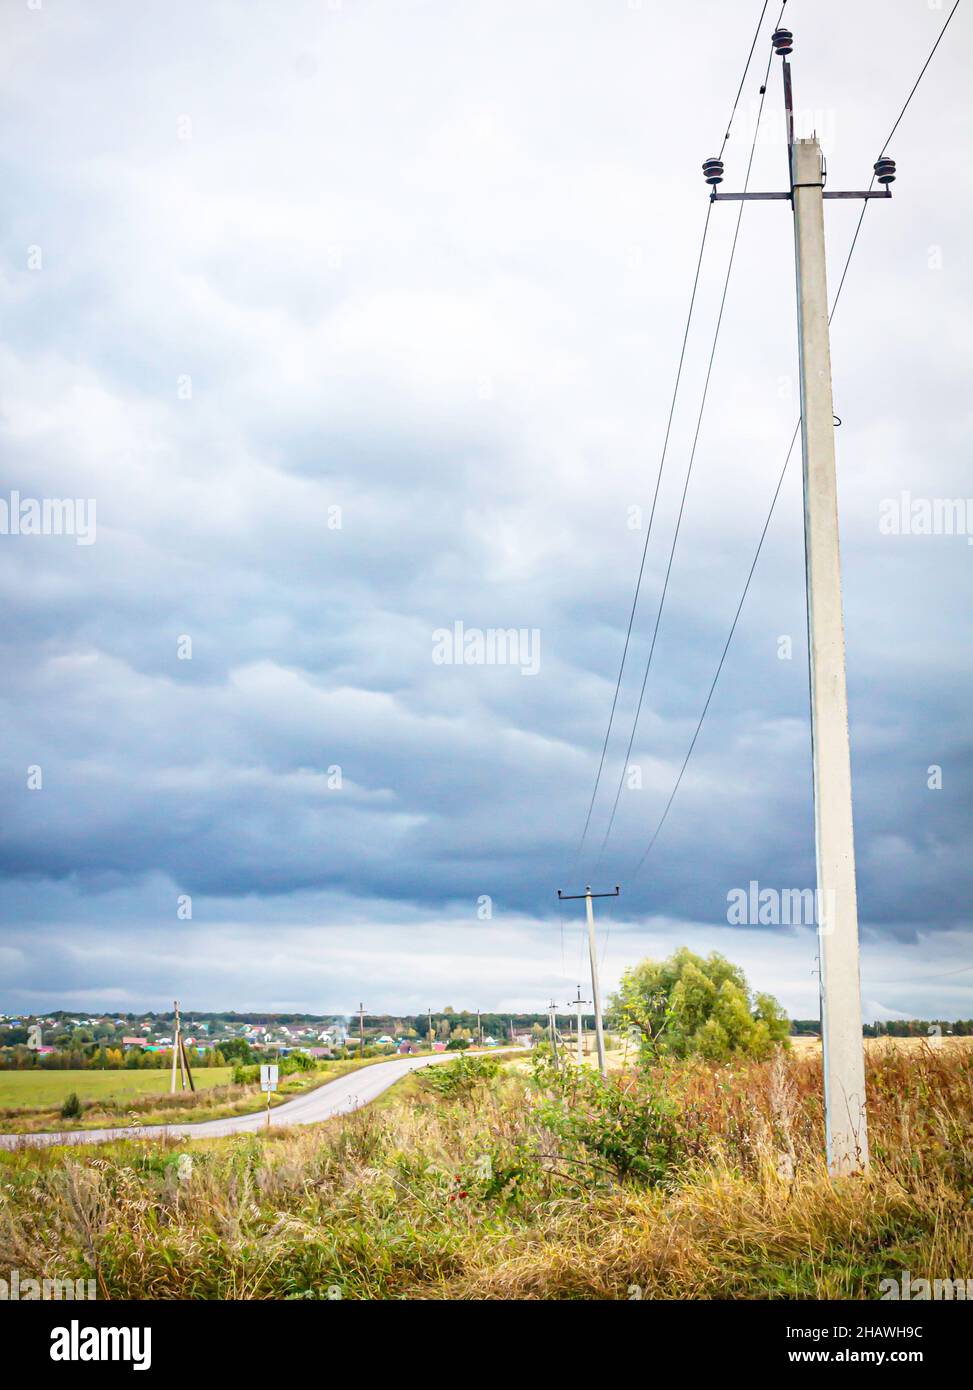 Route d'asphalte rurale dans les champs menant à des chalets de campagne d'été sous des nuages sombres de tempête Banque D'Images